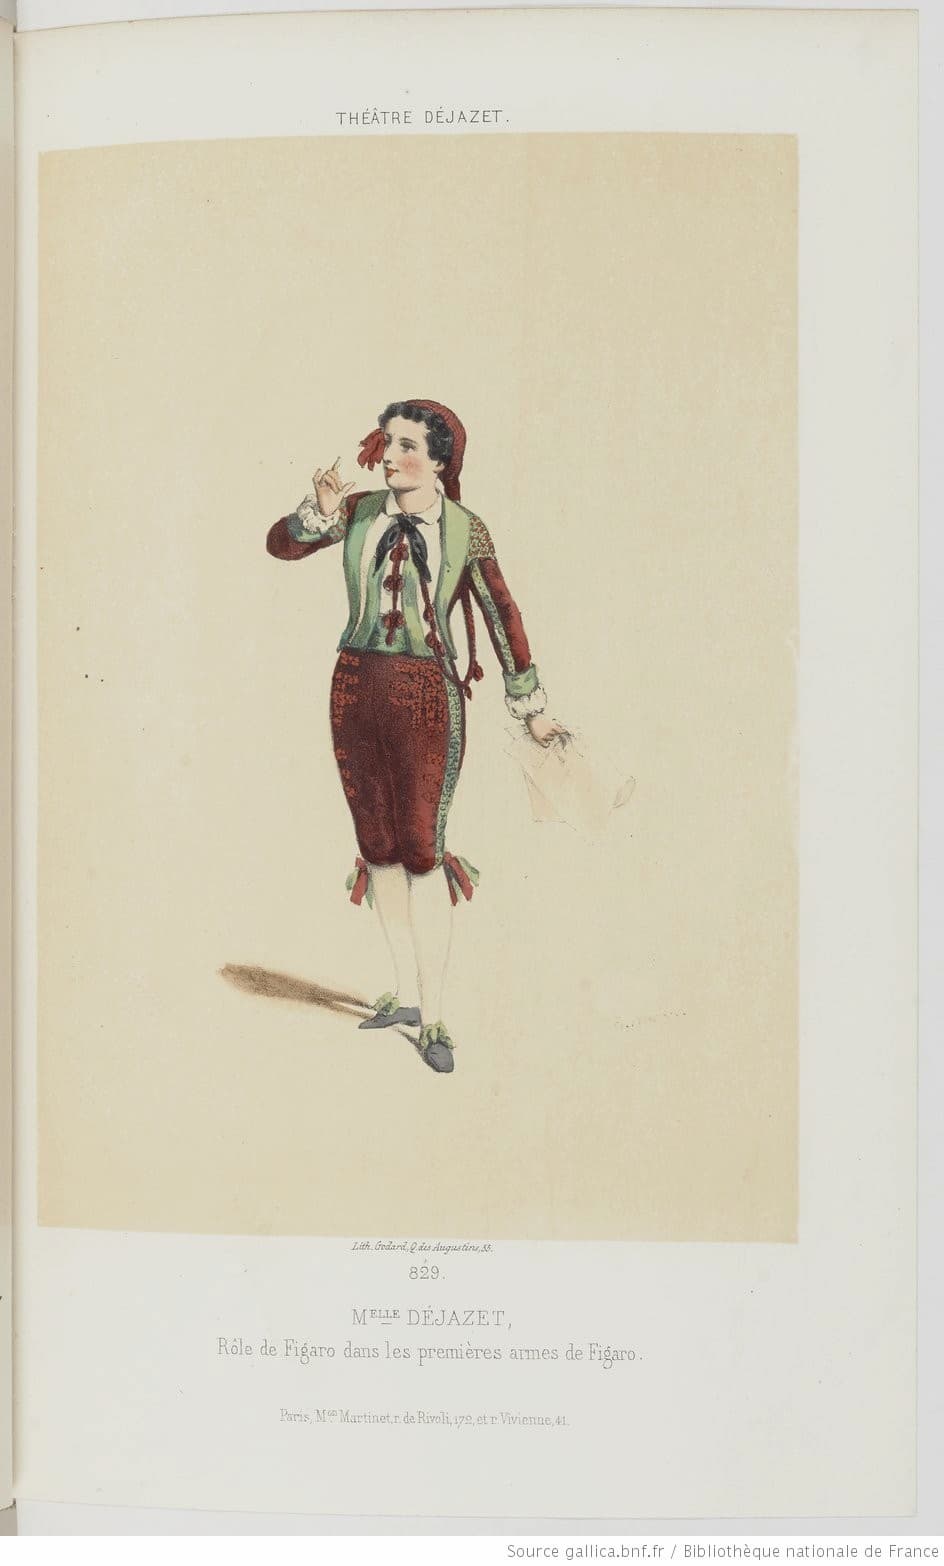 Edmond Morin: M.elle Déjazet, rôle de Figaro, dans Les premières armes de Figaro, 1859 (Théâtre Déjazet)